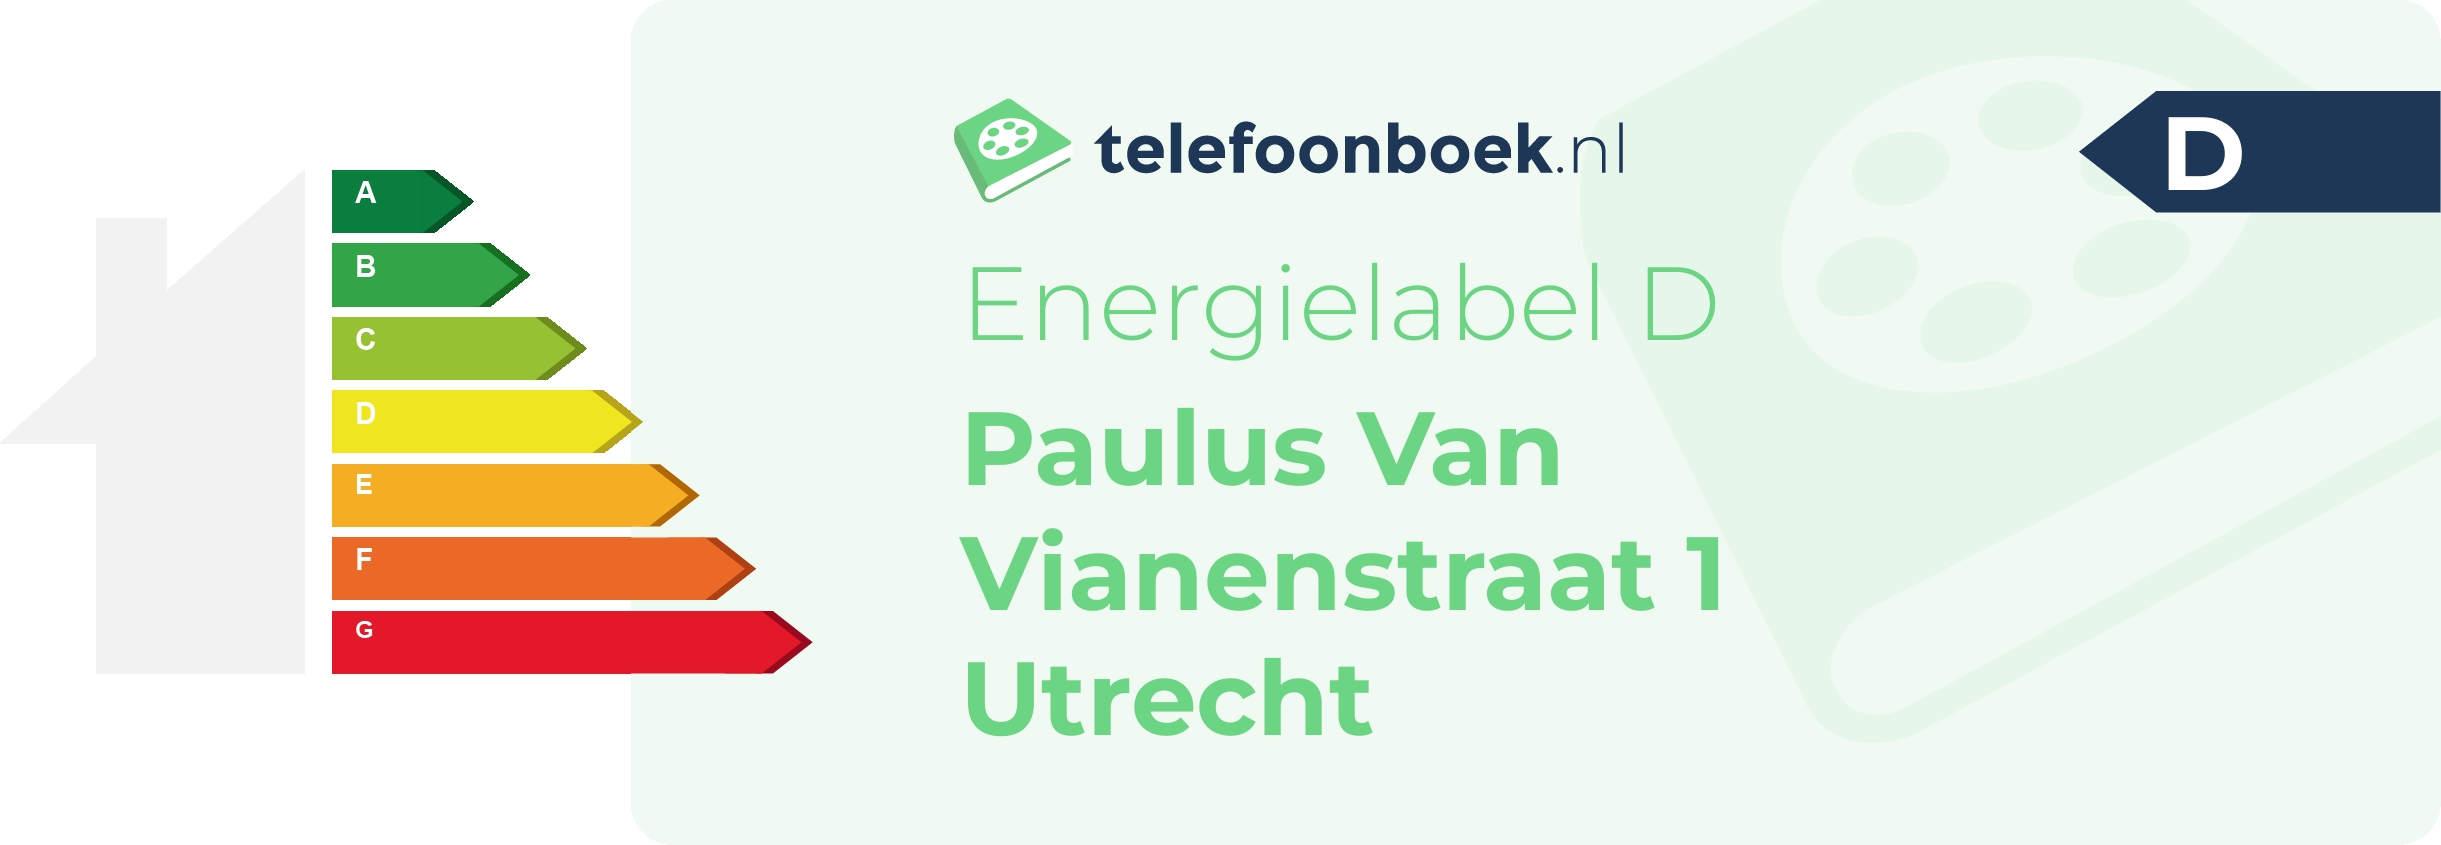 Energielabel Paulus Van Vianenstraat 1 Utrecht